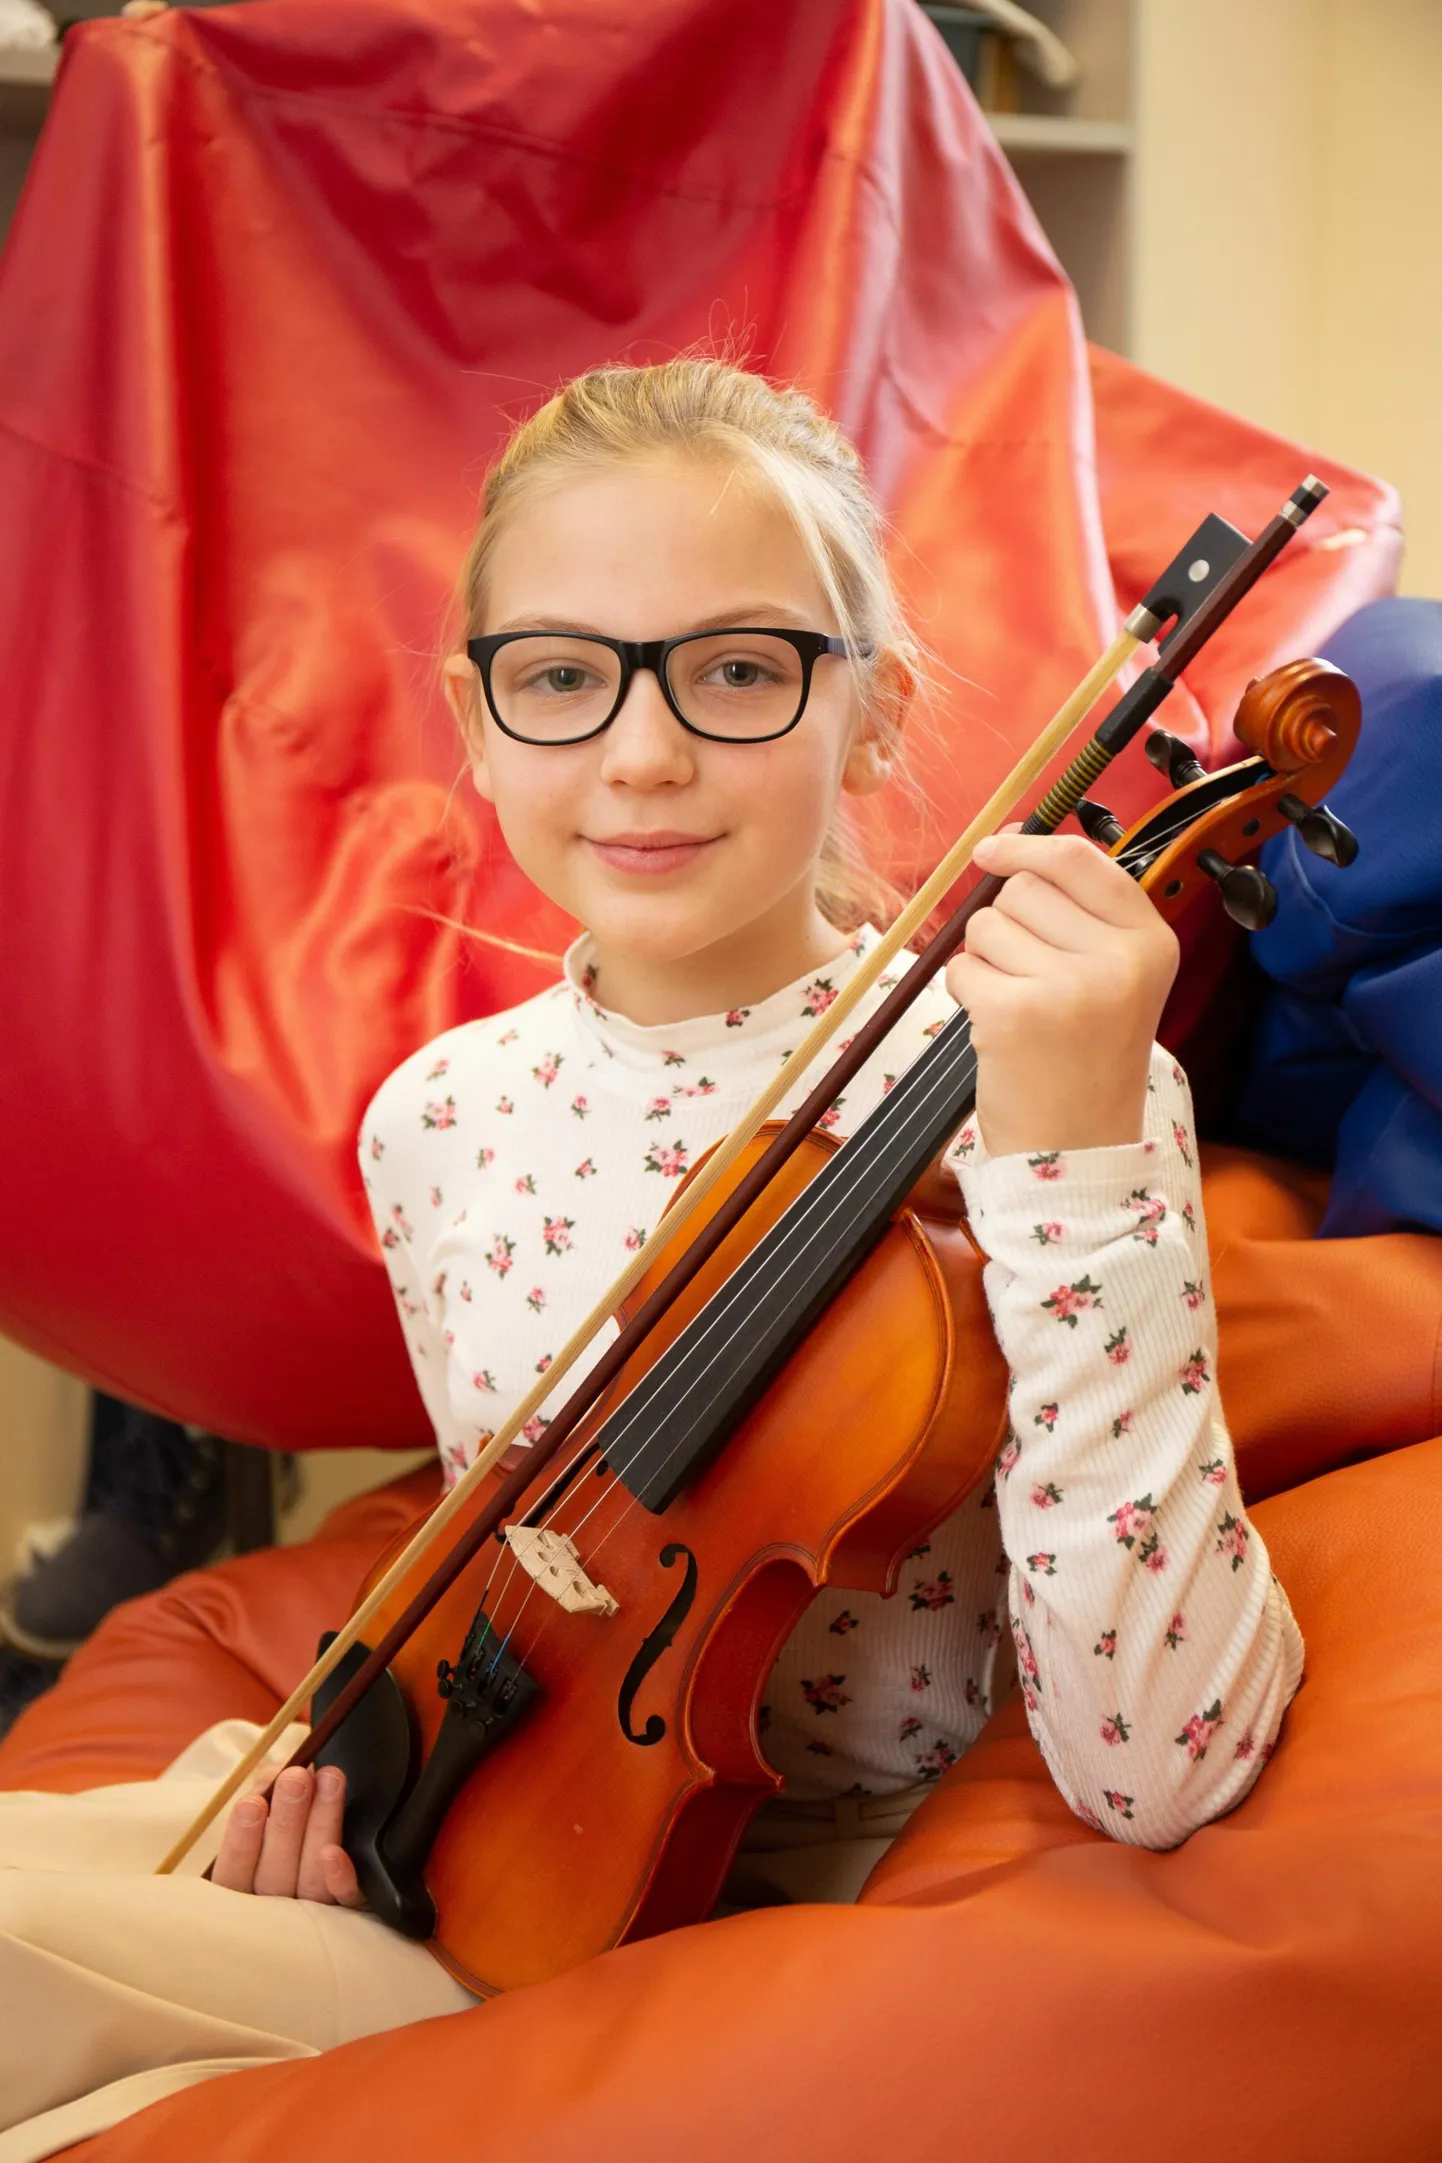 Kitzbergi gümnaasiumi kuuendas klassis õppiv Isabel Palu õpib klaverit ja viiulit Karksi-Nuia muusikakoolis ning käib laulmist õppimas Suure-Jaani muusikakoolis.